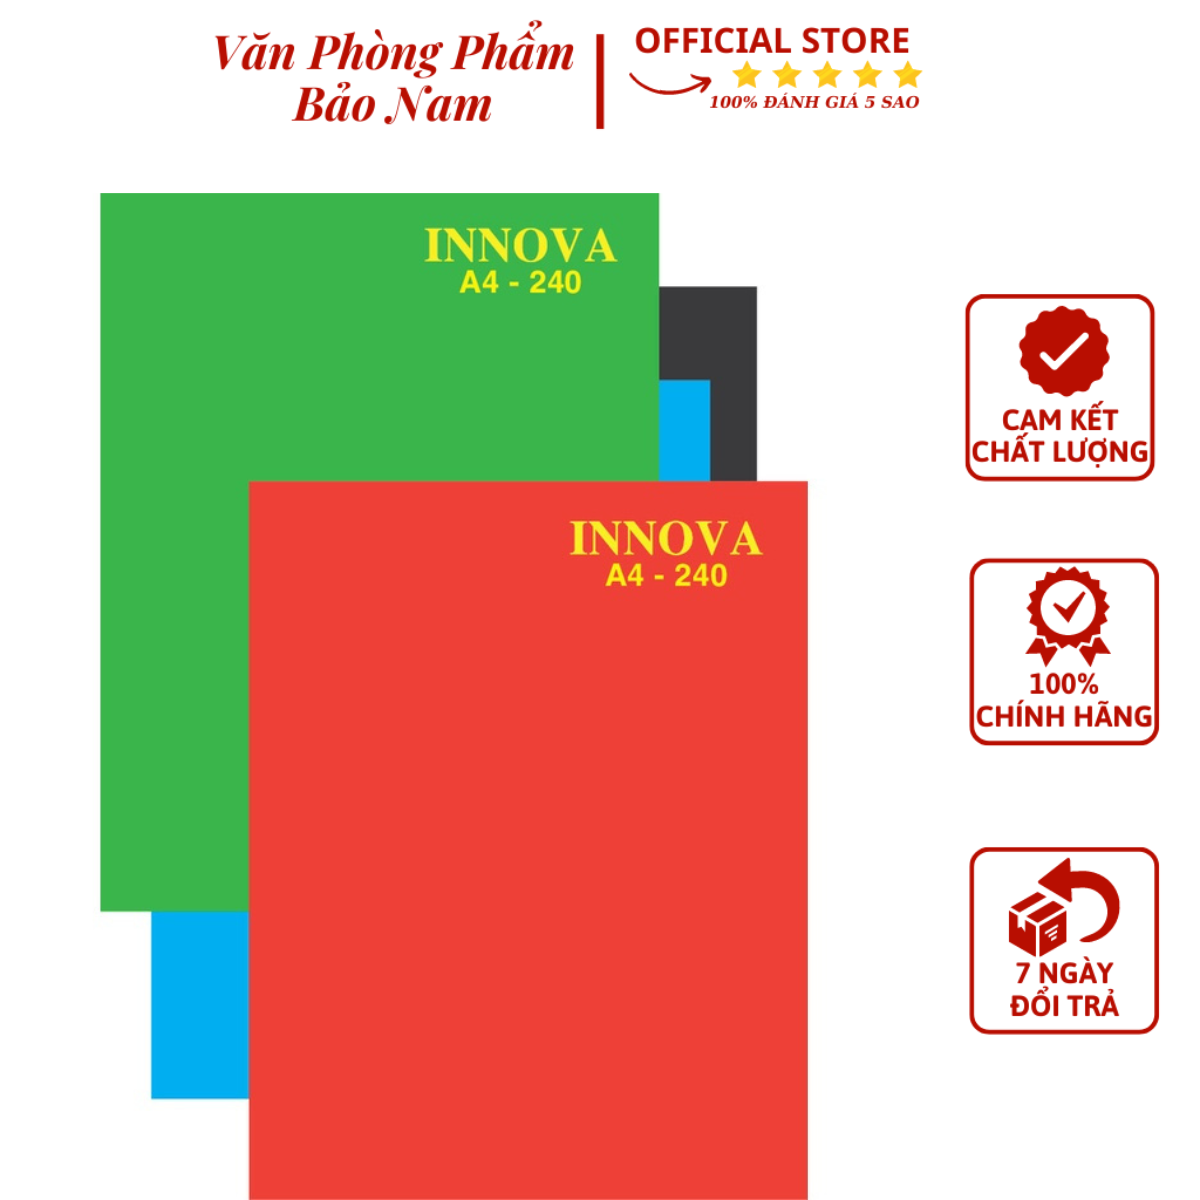 Sổ Bìa Cứng Innova A4 (Bìa Màu Xanh Đỏ) Hải Tiến - Thừa Đầu - Văn Phòng Phẩm Bảo Nam